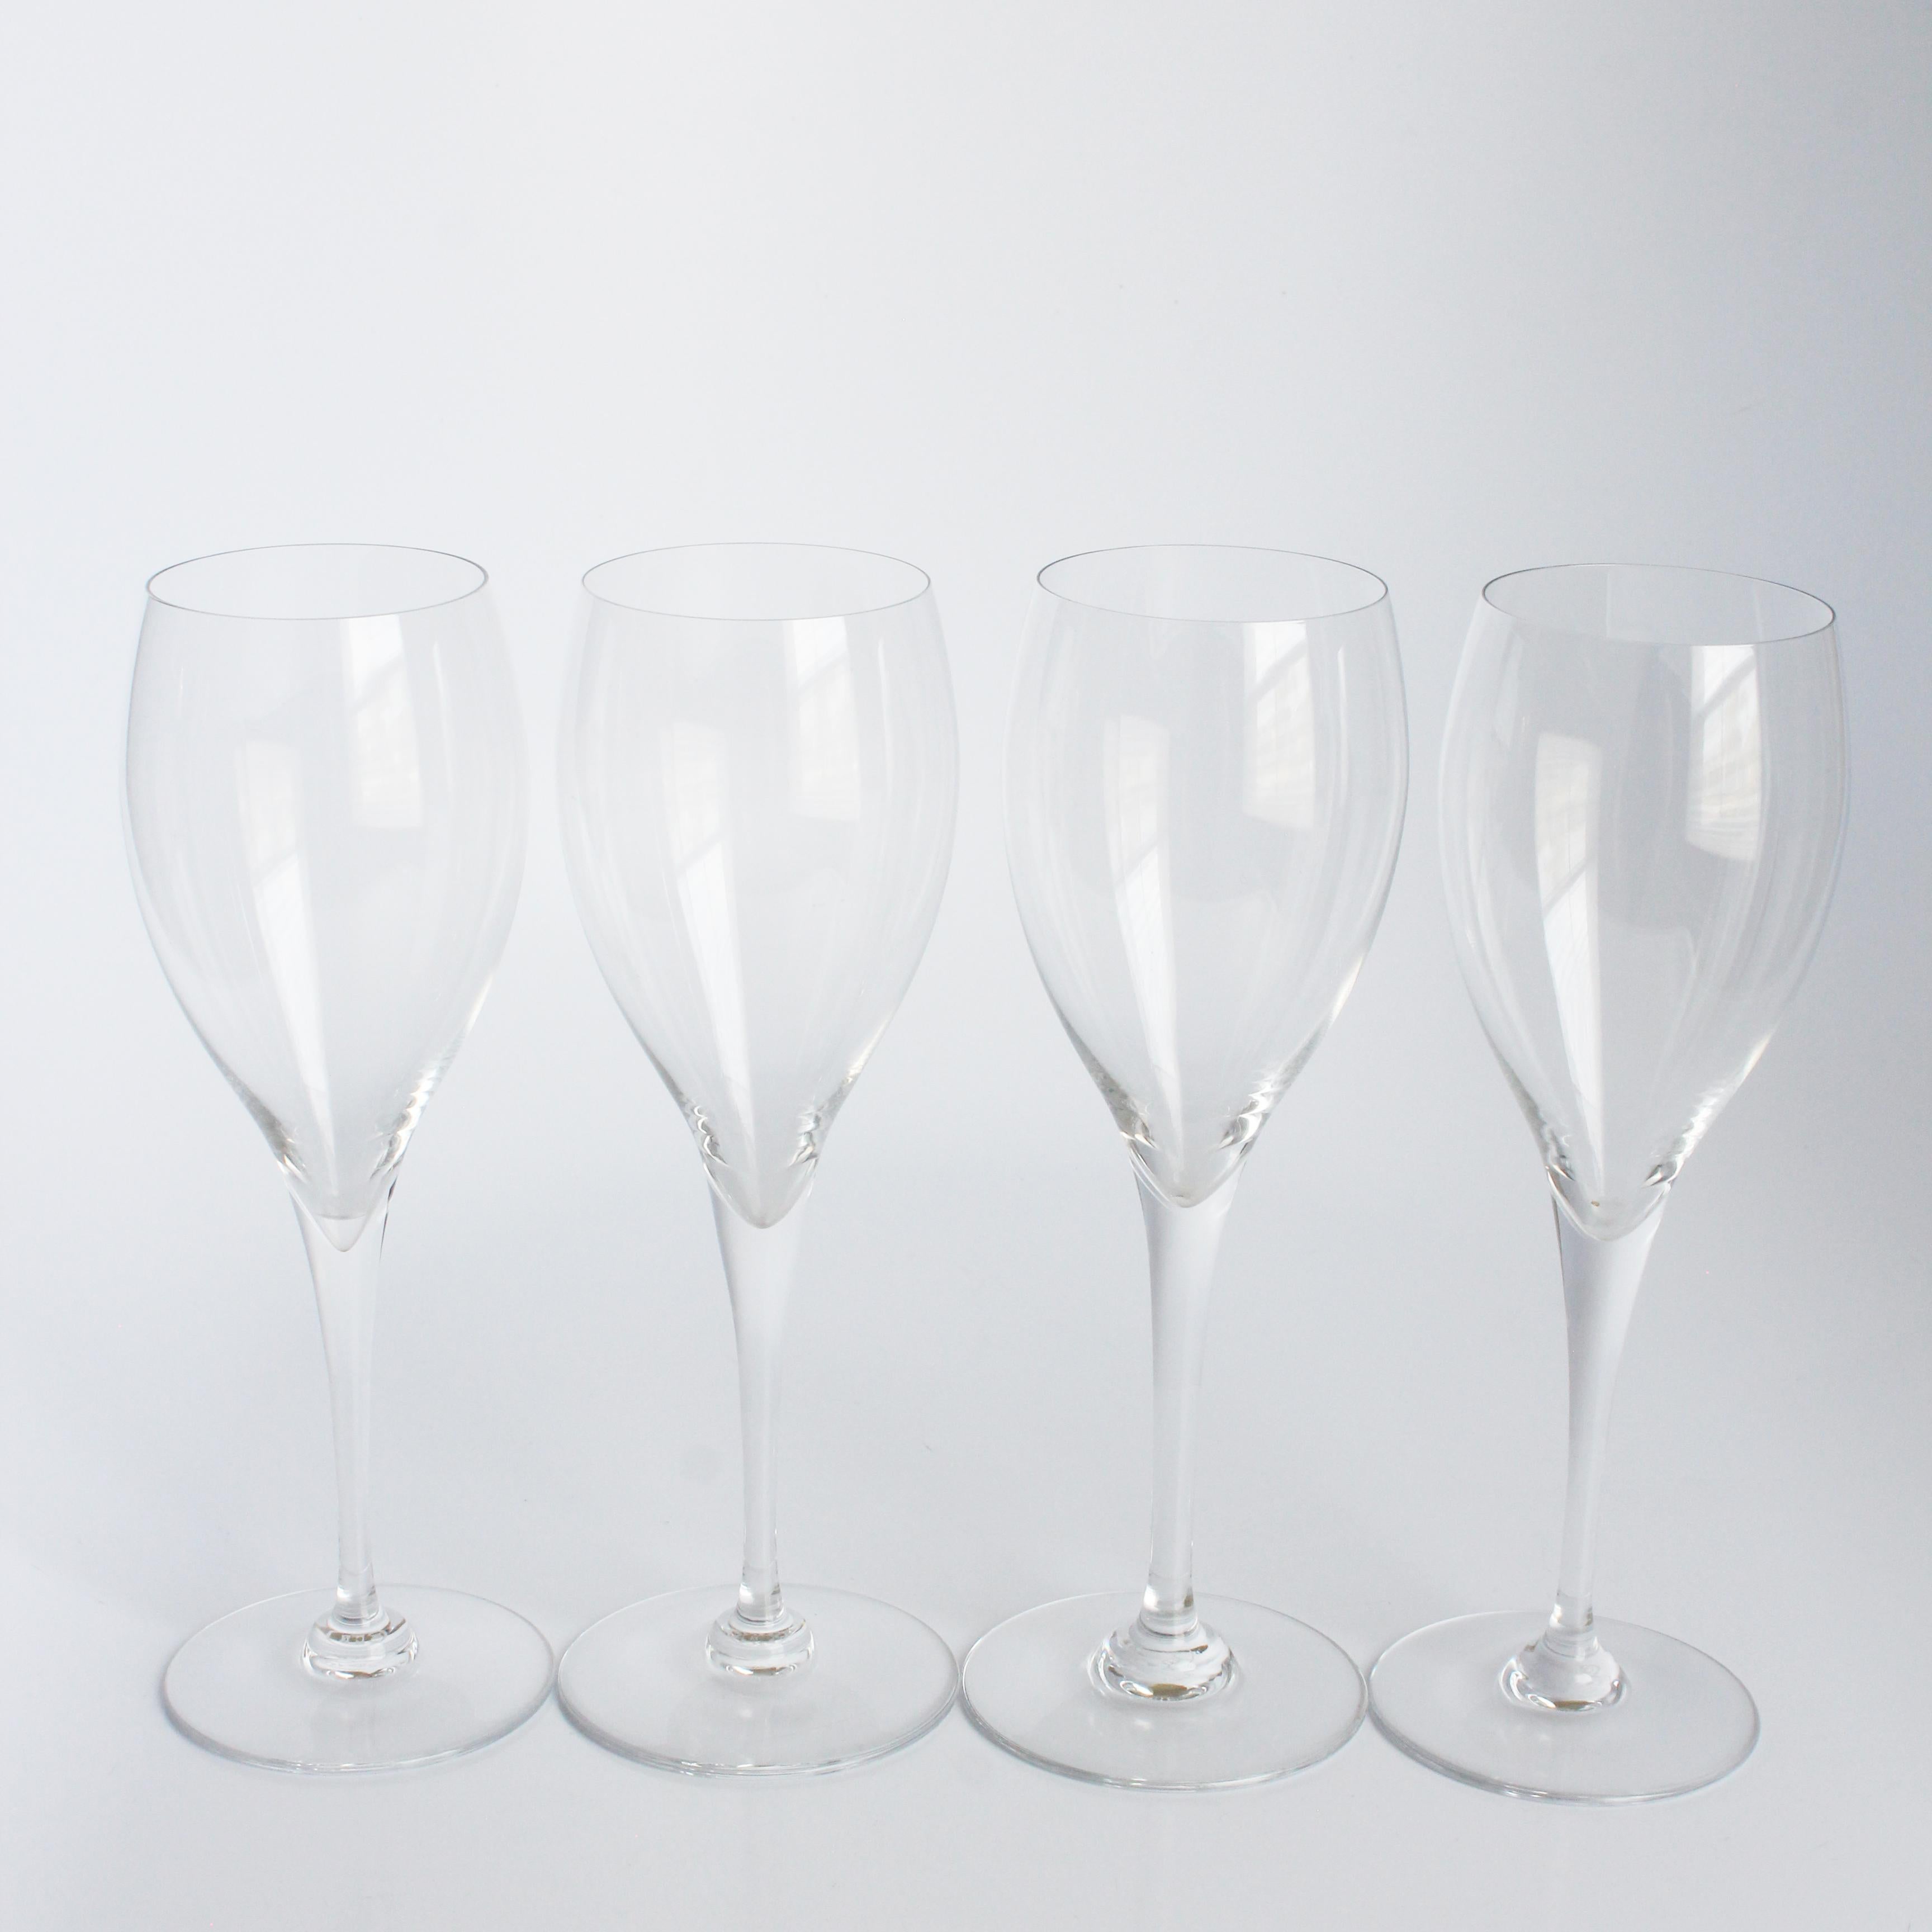 Flûtes à champagne ou tulipes d'occasion authentiques de Baccarat à motif St. Remy, probablement fabriquées dans les années 80. Fabriqués en cristal, ces élégants verres à pied ajouteront une touche de luxe à vos rassemblements et célébrations !